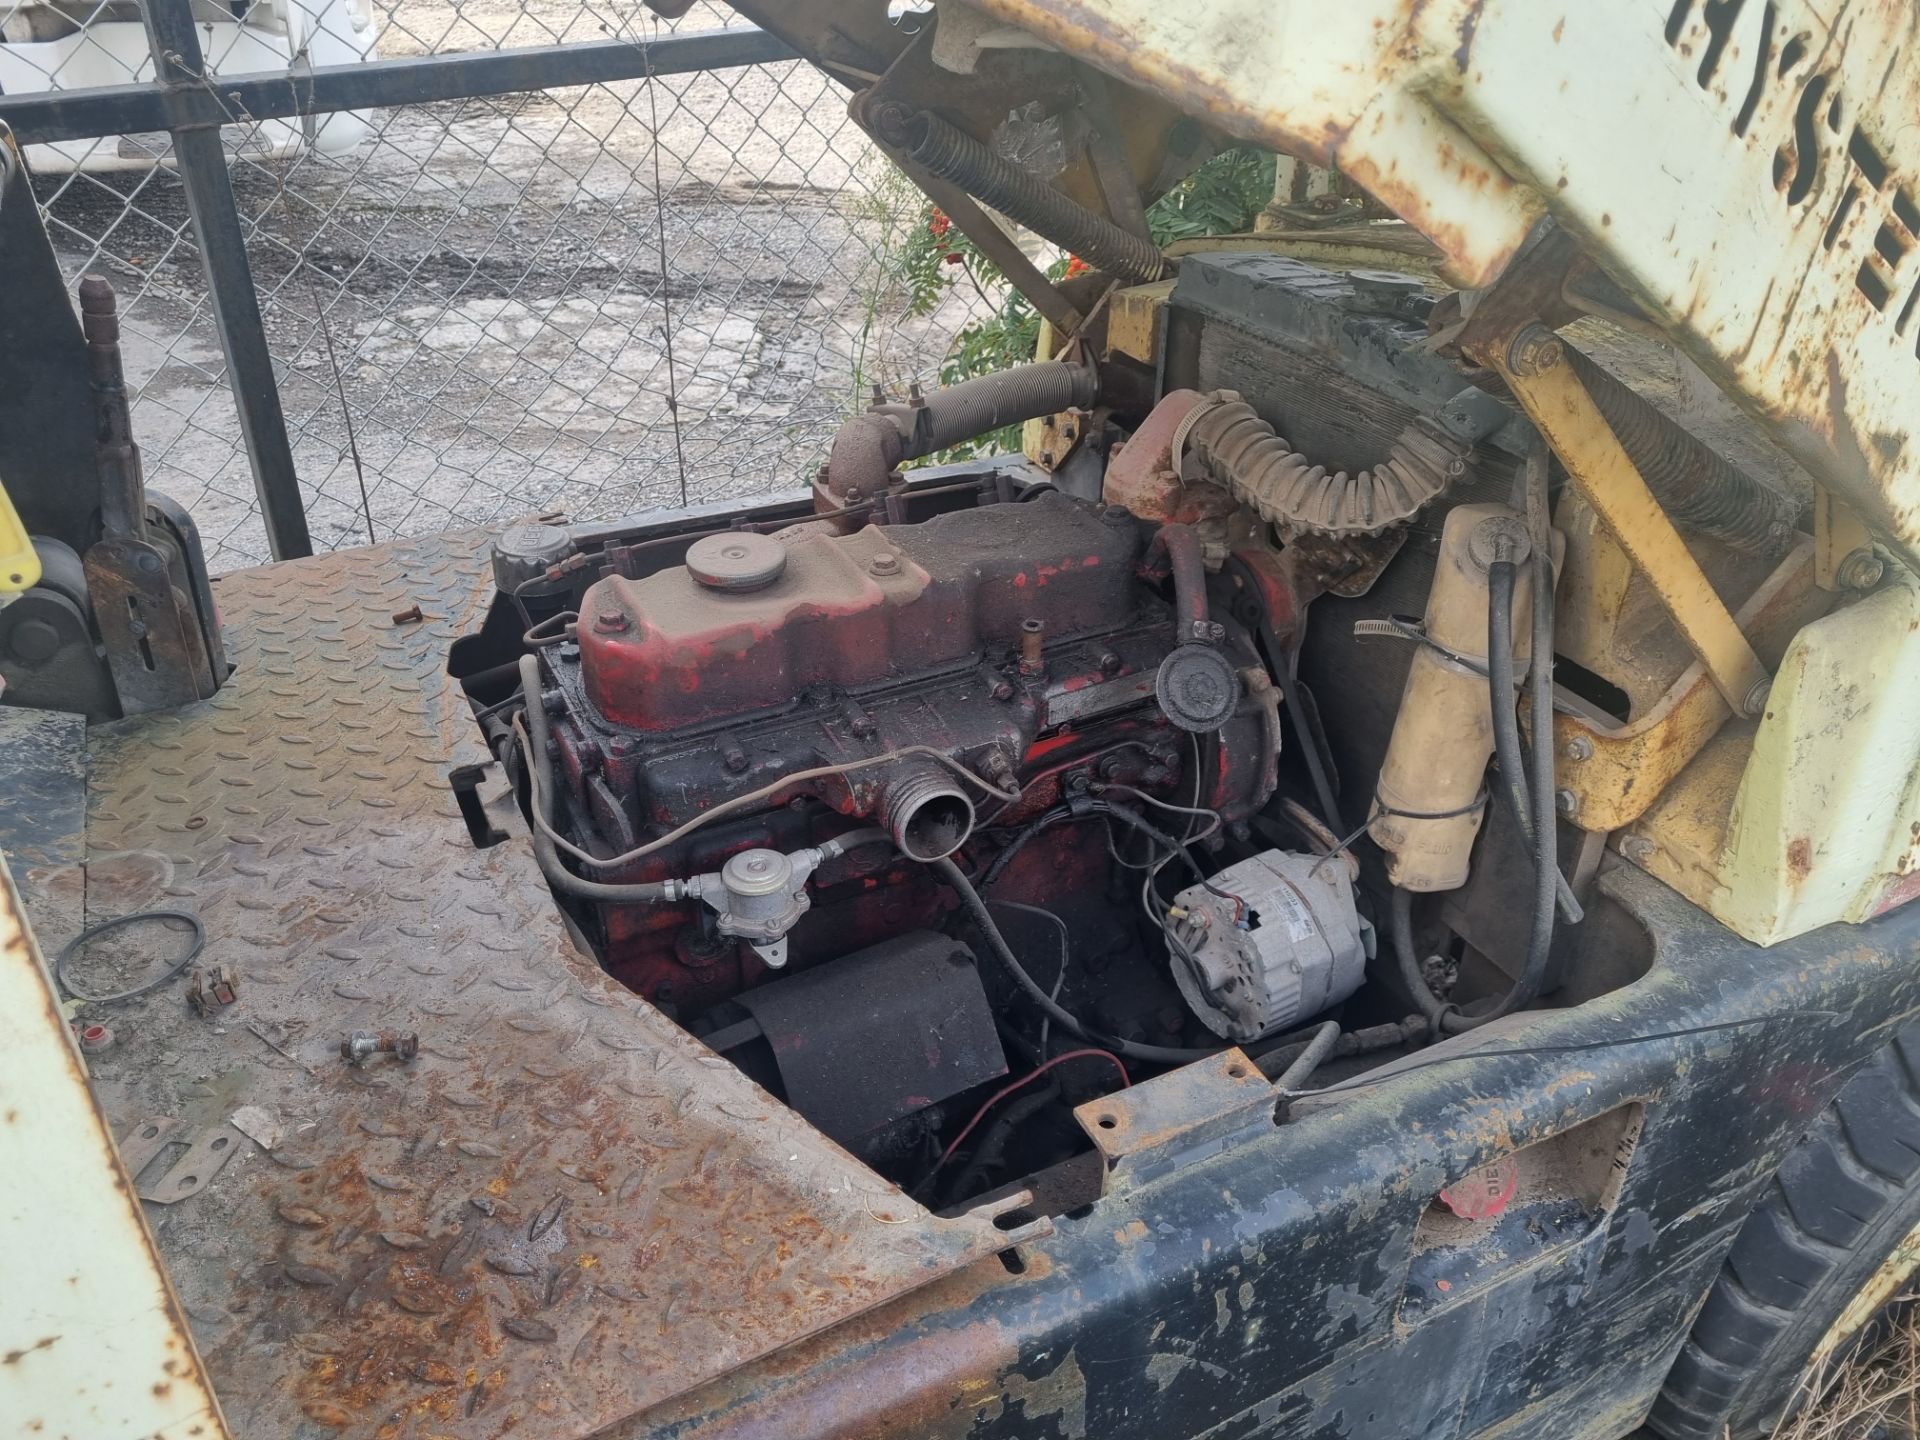 1983 Hyster H40J Forklift - Engine: Perkins 4.203.2 *NO VAT* - Image 8 of 11